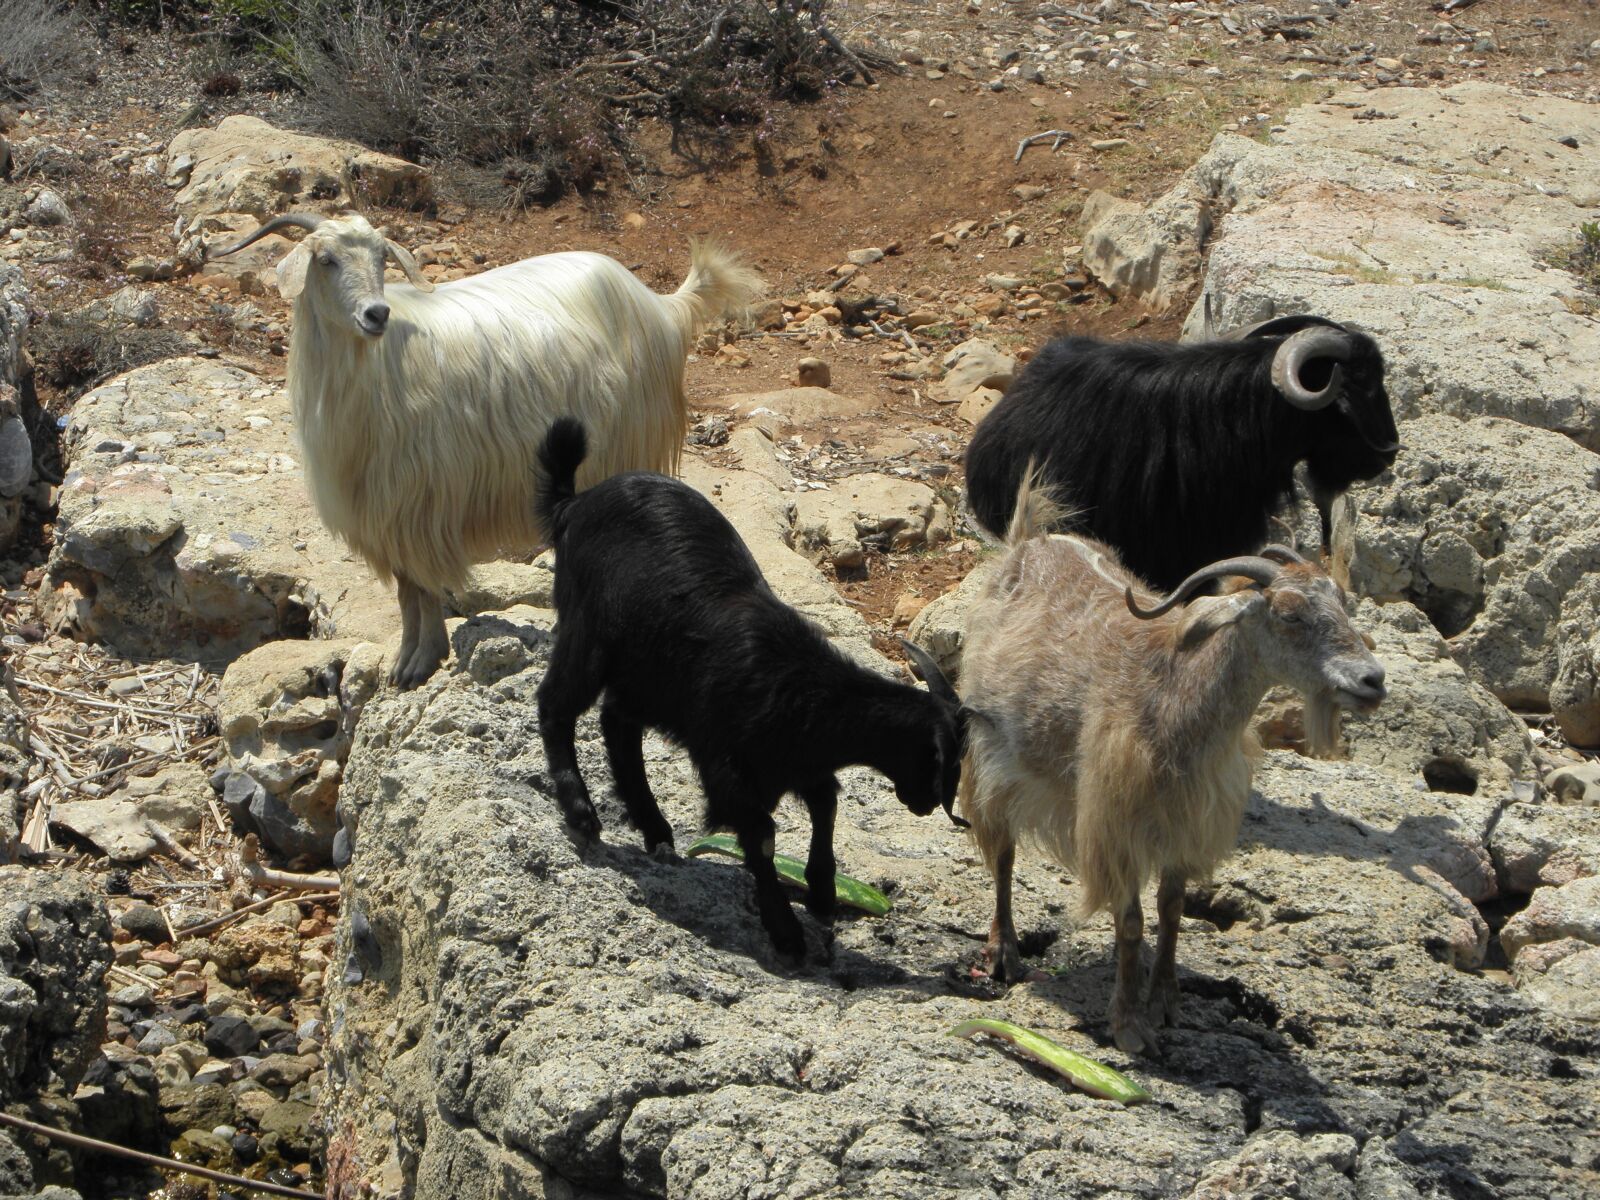 Olympus SP590UZ sample photo. Goat, animal, nature photography